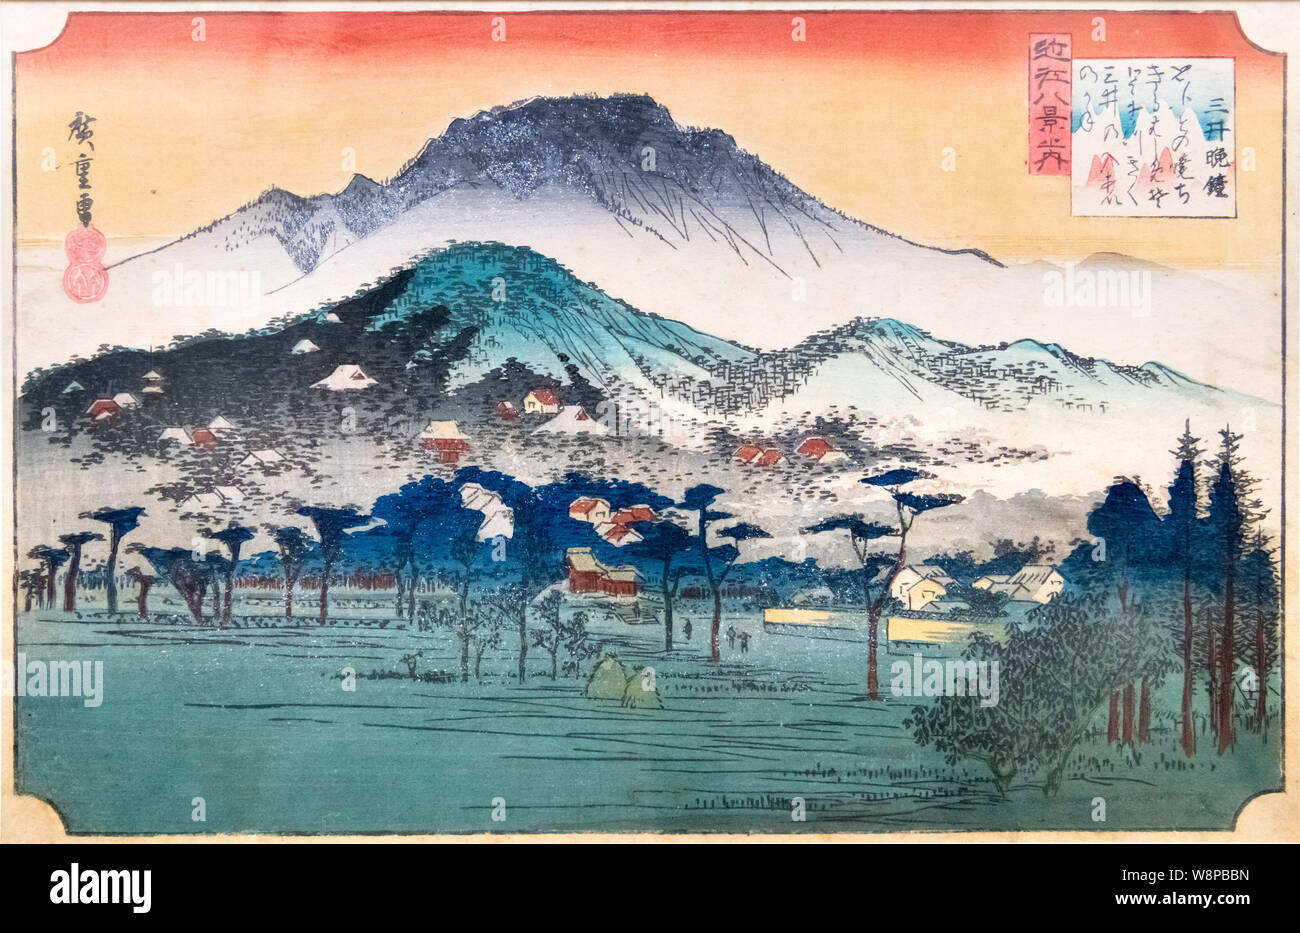 Le otto scene di Omi provincia: Serata campana al tempio Mii da Utagawa Hiroshige (1797 -1858), periodo Edo, del XIX secolo e il Museo Nazionale di Tokyo, Giappone Foto Stock